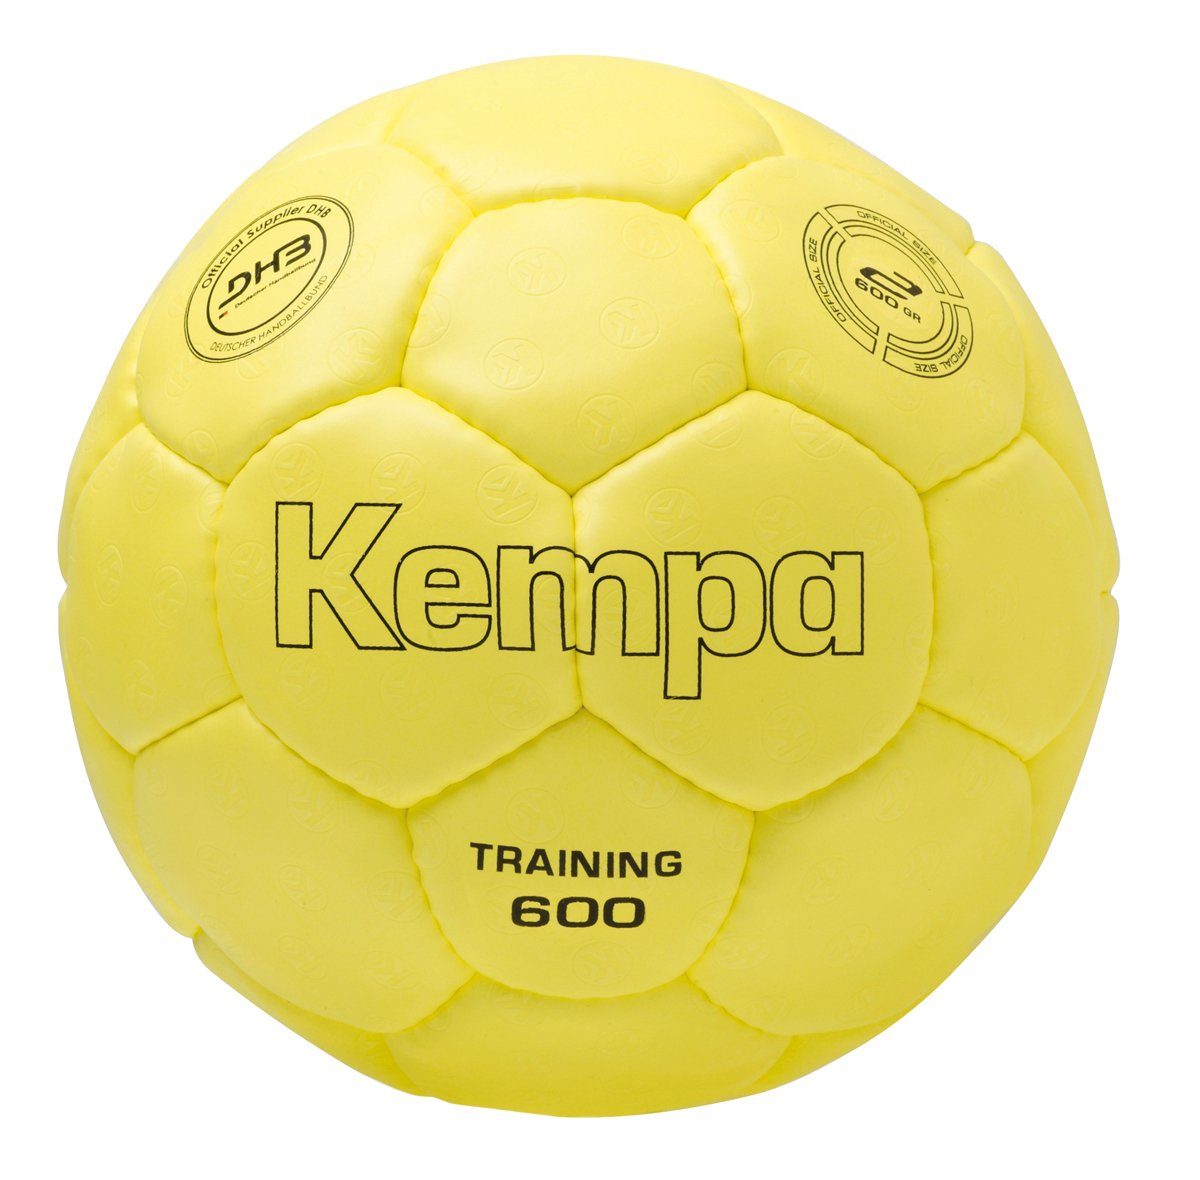 Kempa Handball Kempa Handball TRAINING 600 GRAMM